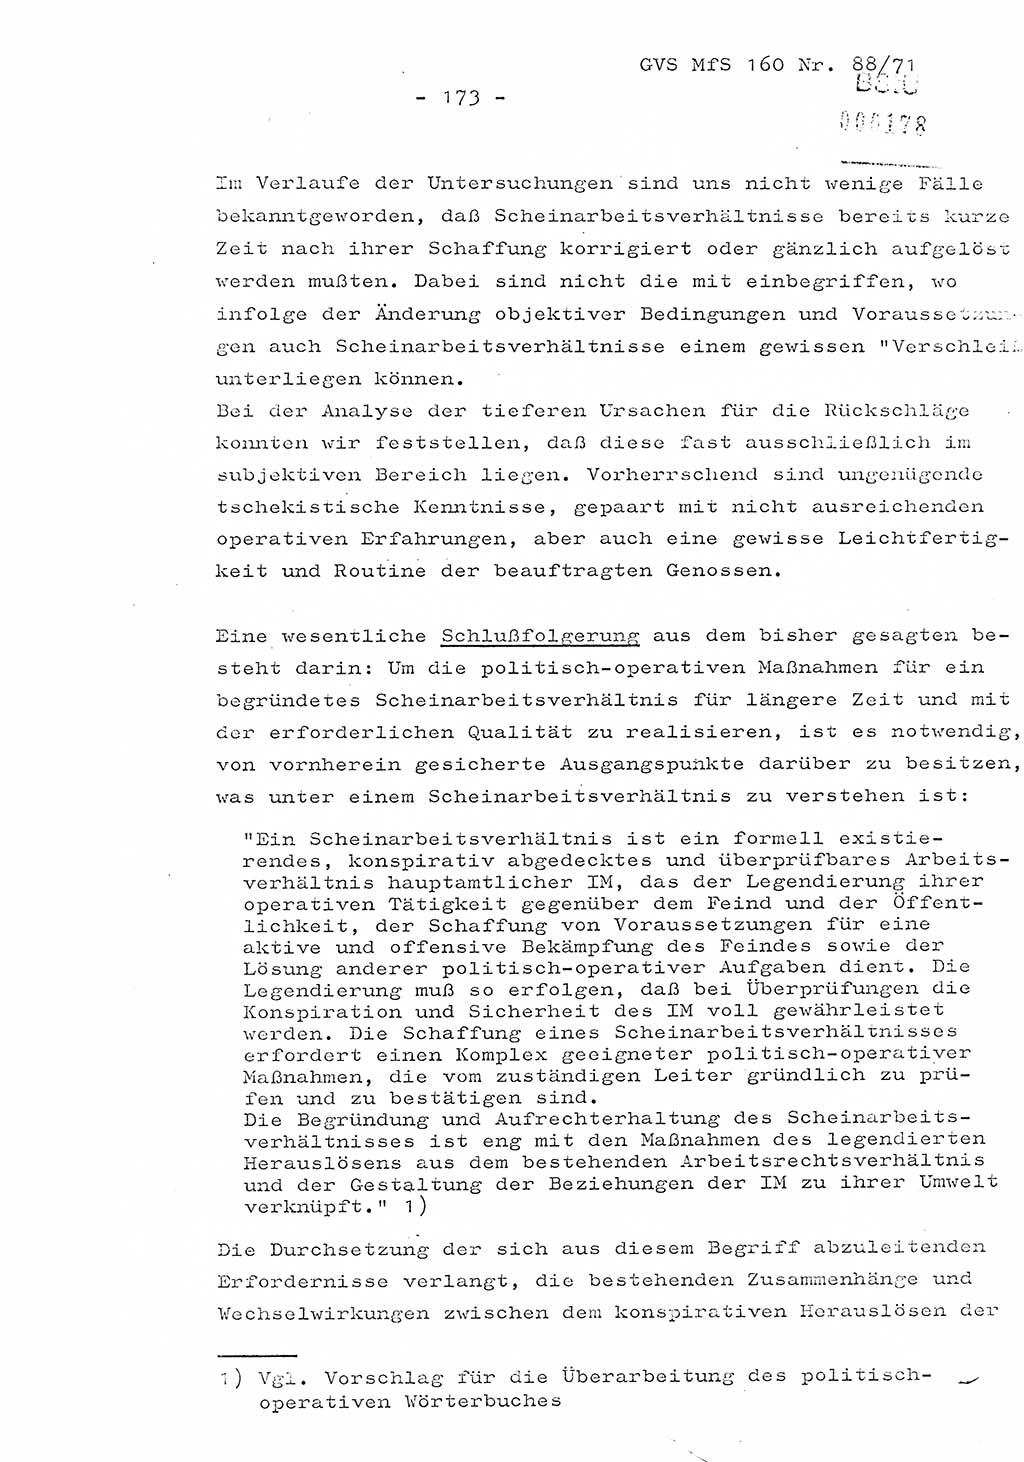 Dissertation Oberstleutnant Josef Schwarz (BV Schwerin), Major Fritz Amm (JHS), Hauptmann Peter Gräßler (JHS), Ministerium für Staatssicherheit (MfS) [Deutsche Demokratische Republik (DDR)], Juristische Hochschule (JHS), Geheime Verschlußsache (GVS) 160-88/71, Potsdam 1972, Seite 173 (Diss. MfS DDR JHS GVS 160-88/71 1972, S. 173)